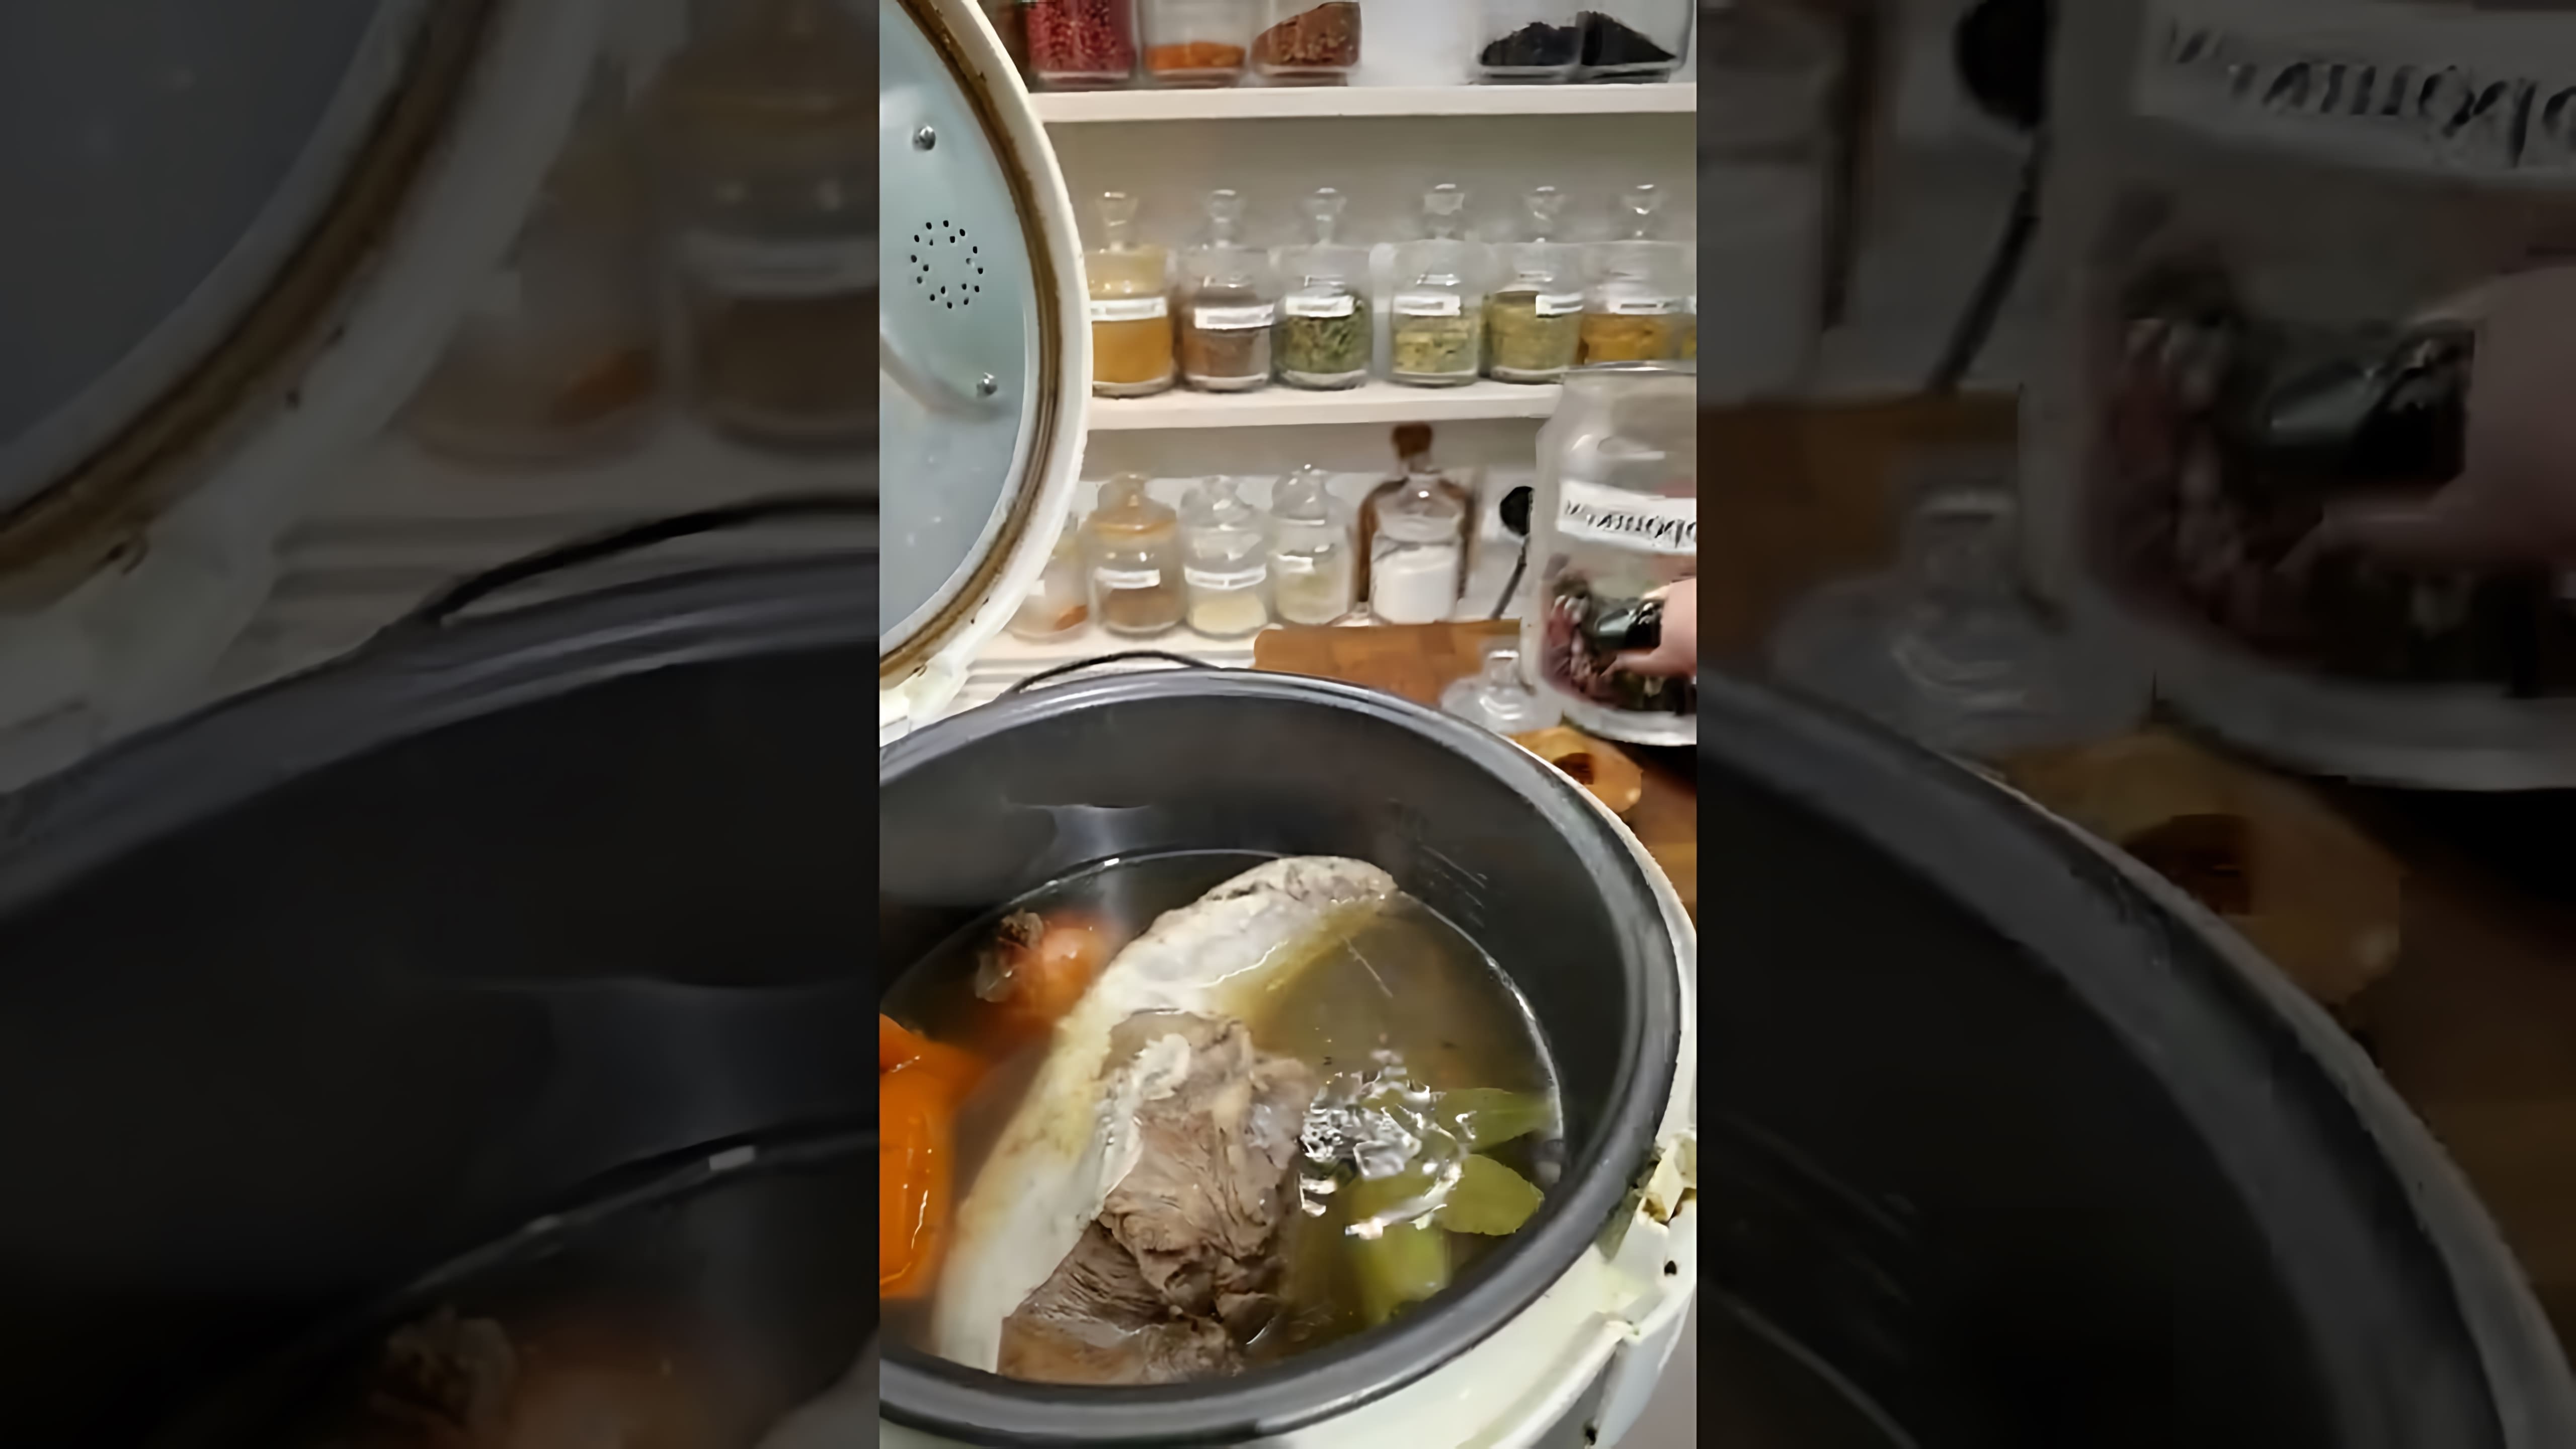 В этом видео демонстрируется процесс приготовления языка и соуса к нему